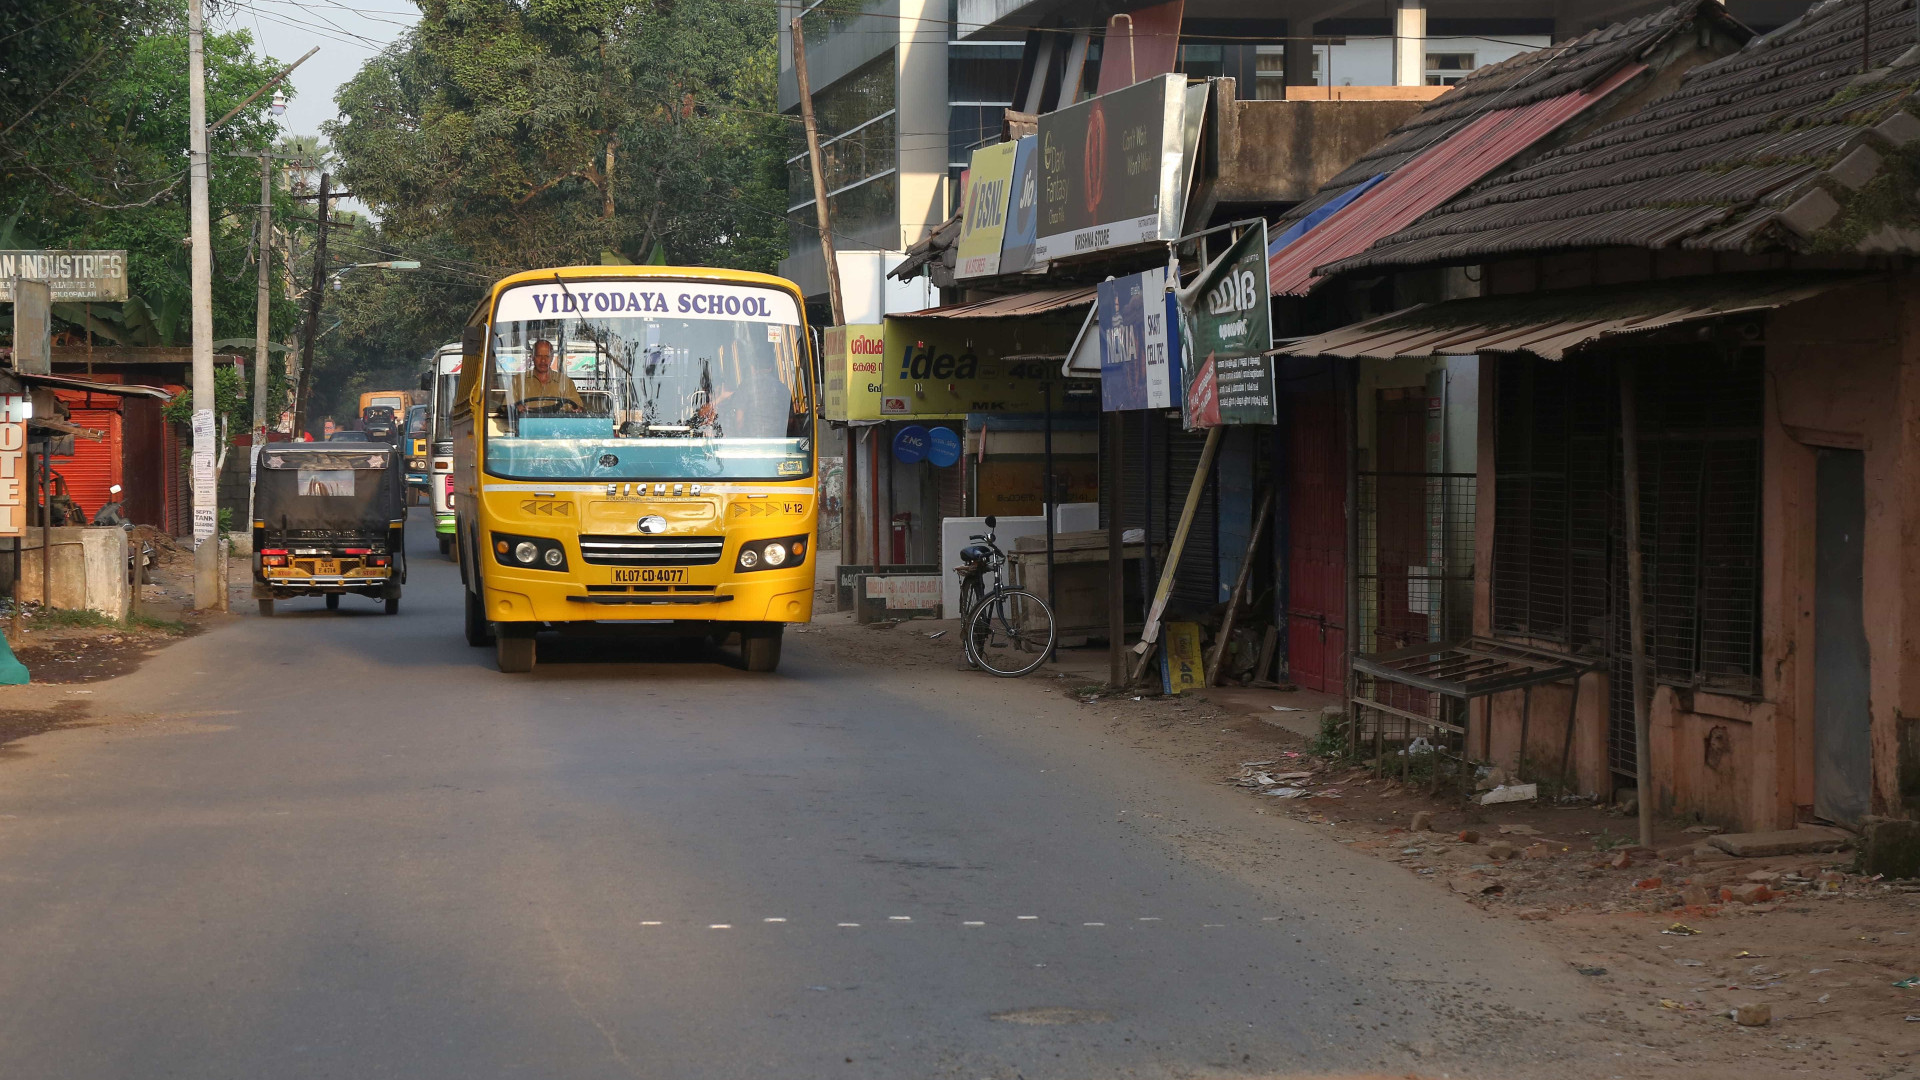 Seis crianças morrem após ônibus derrapar em estrada na Índia